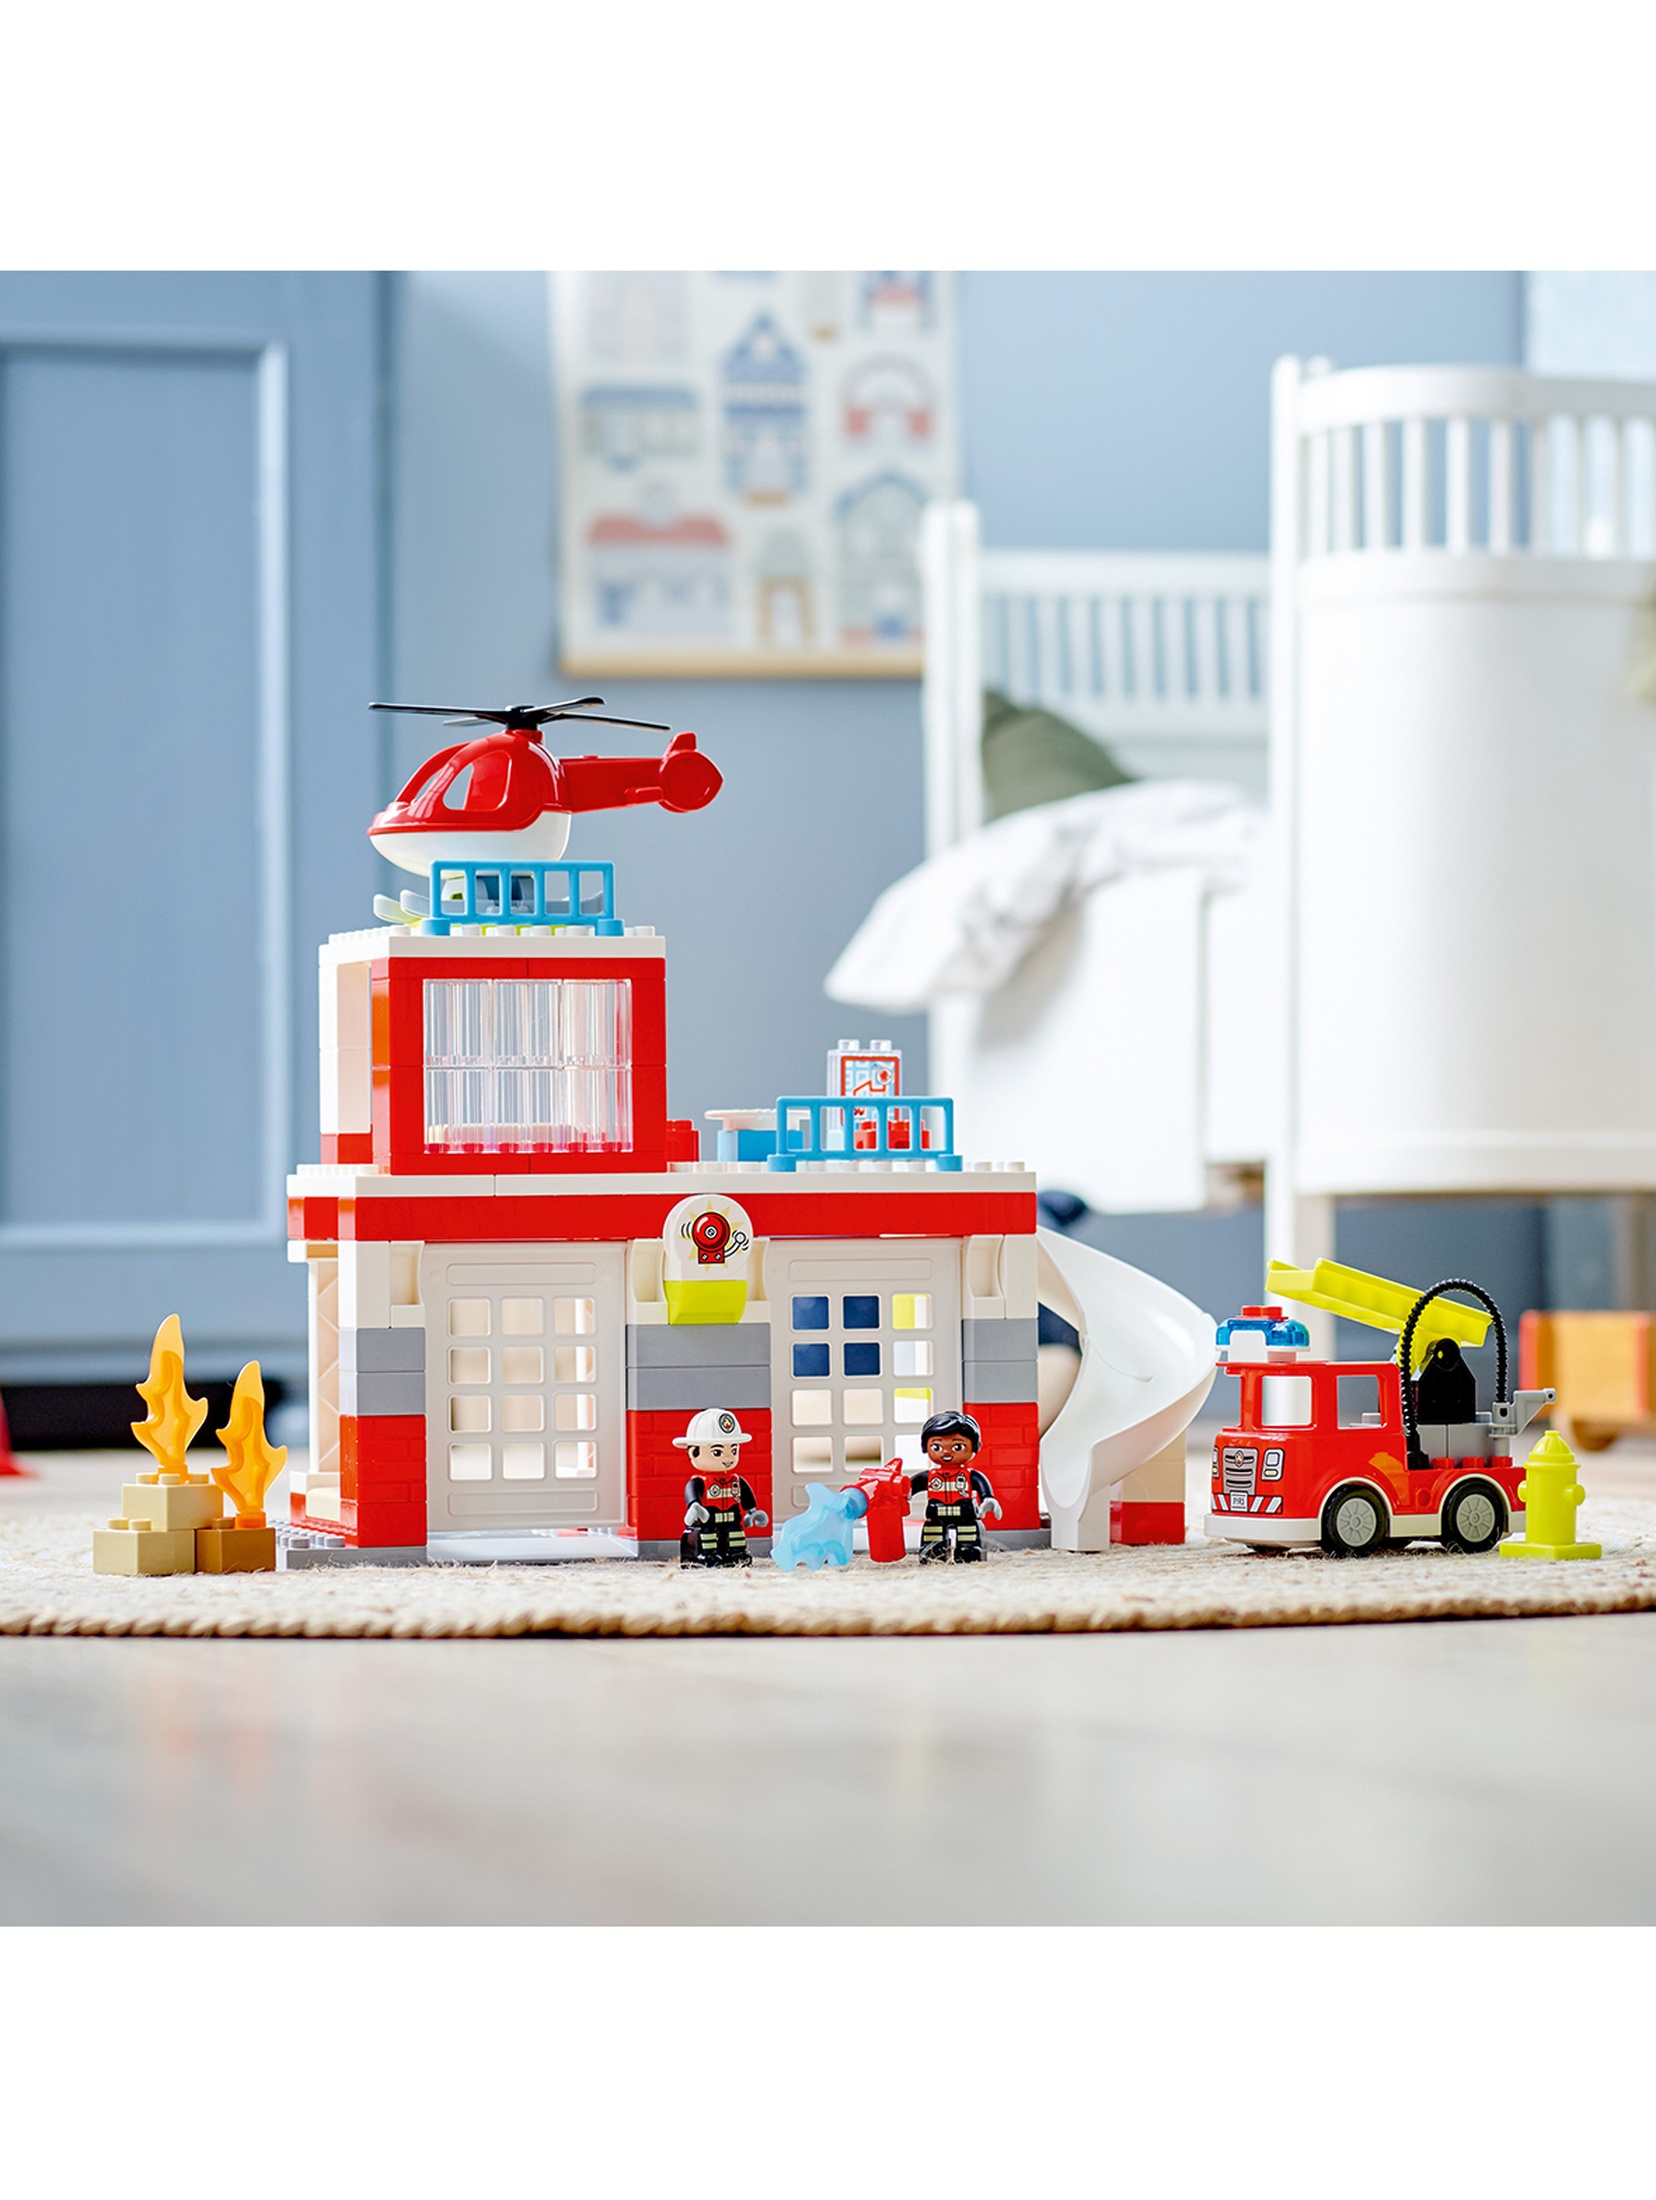 LEGO DUPLO - Remiza strażacka i helikopter 10970 - 117 elementów, wiek 2+